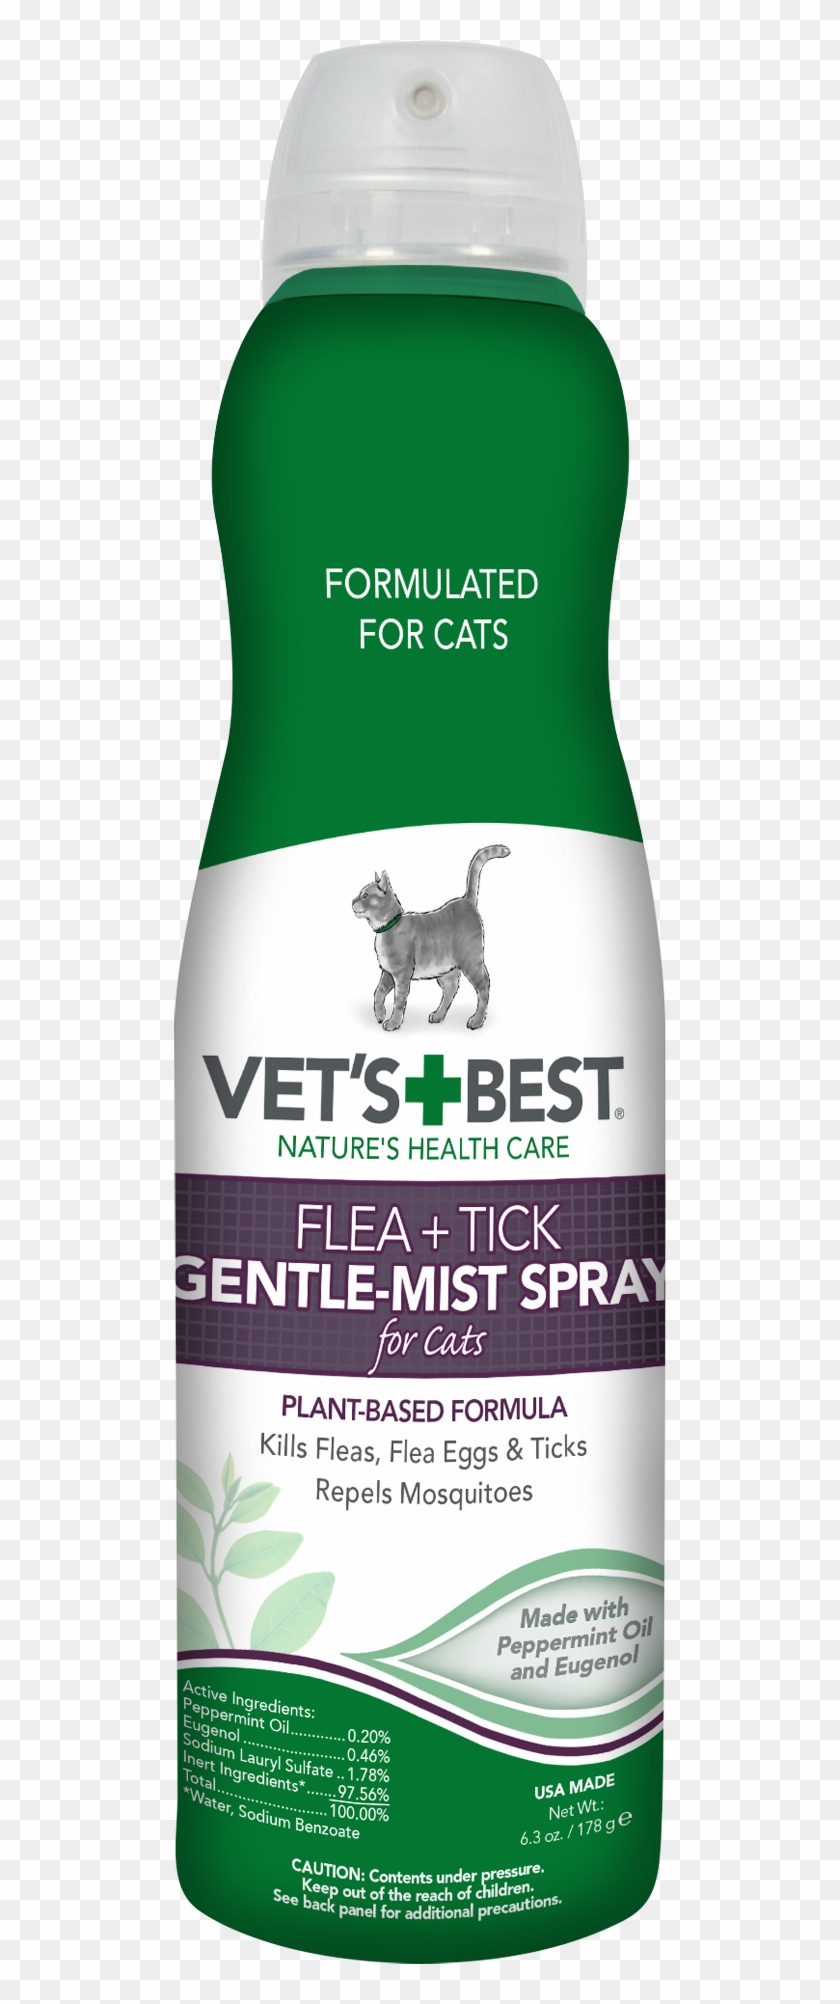 Vet's Best Flea And Tick Gentle-mist Spray For Cats, - Vets Best Flea And Tick Spray Clipart #1516400